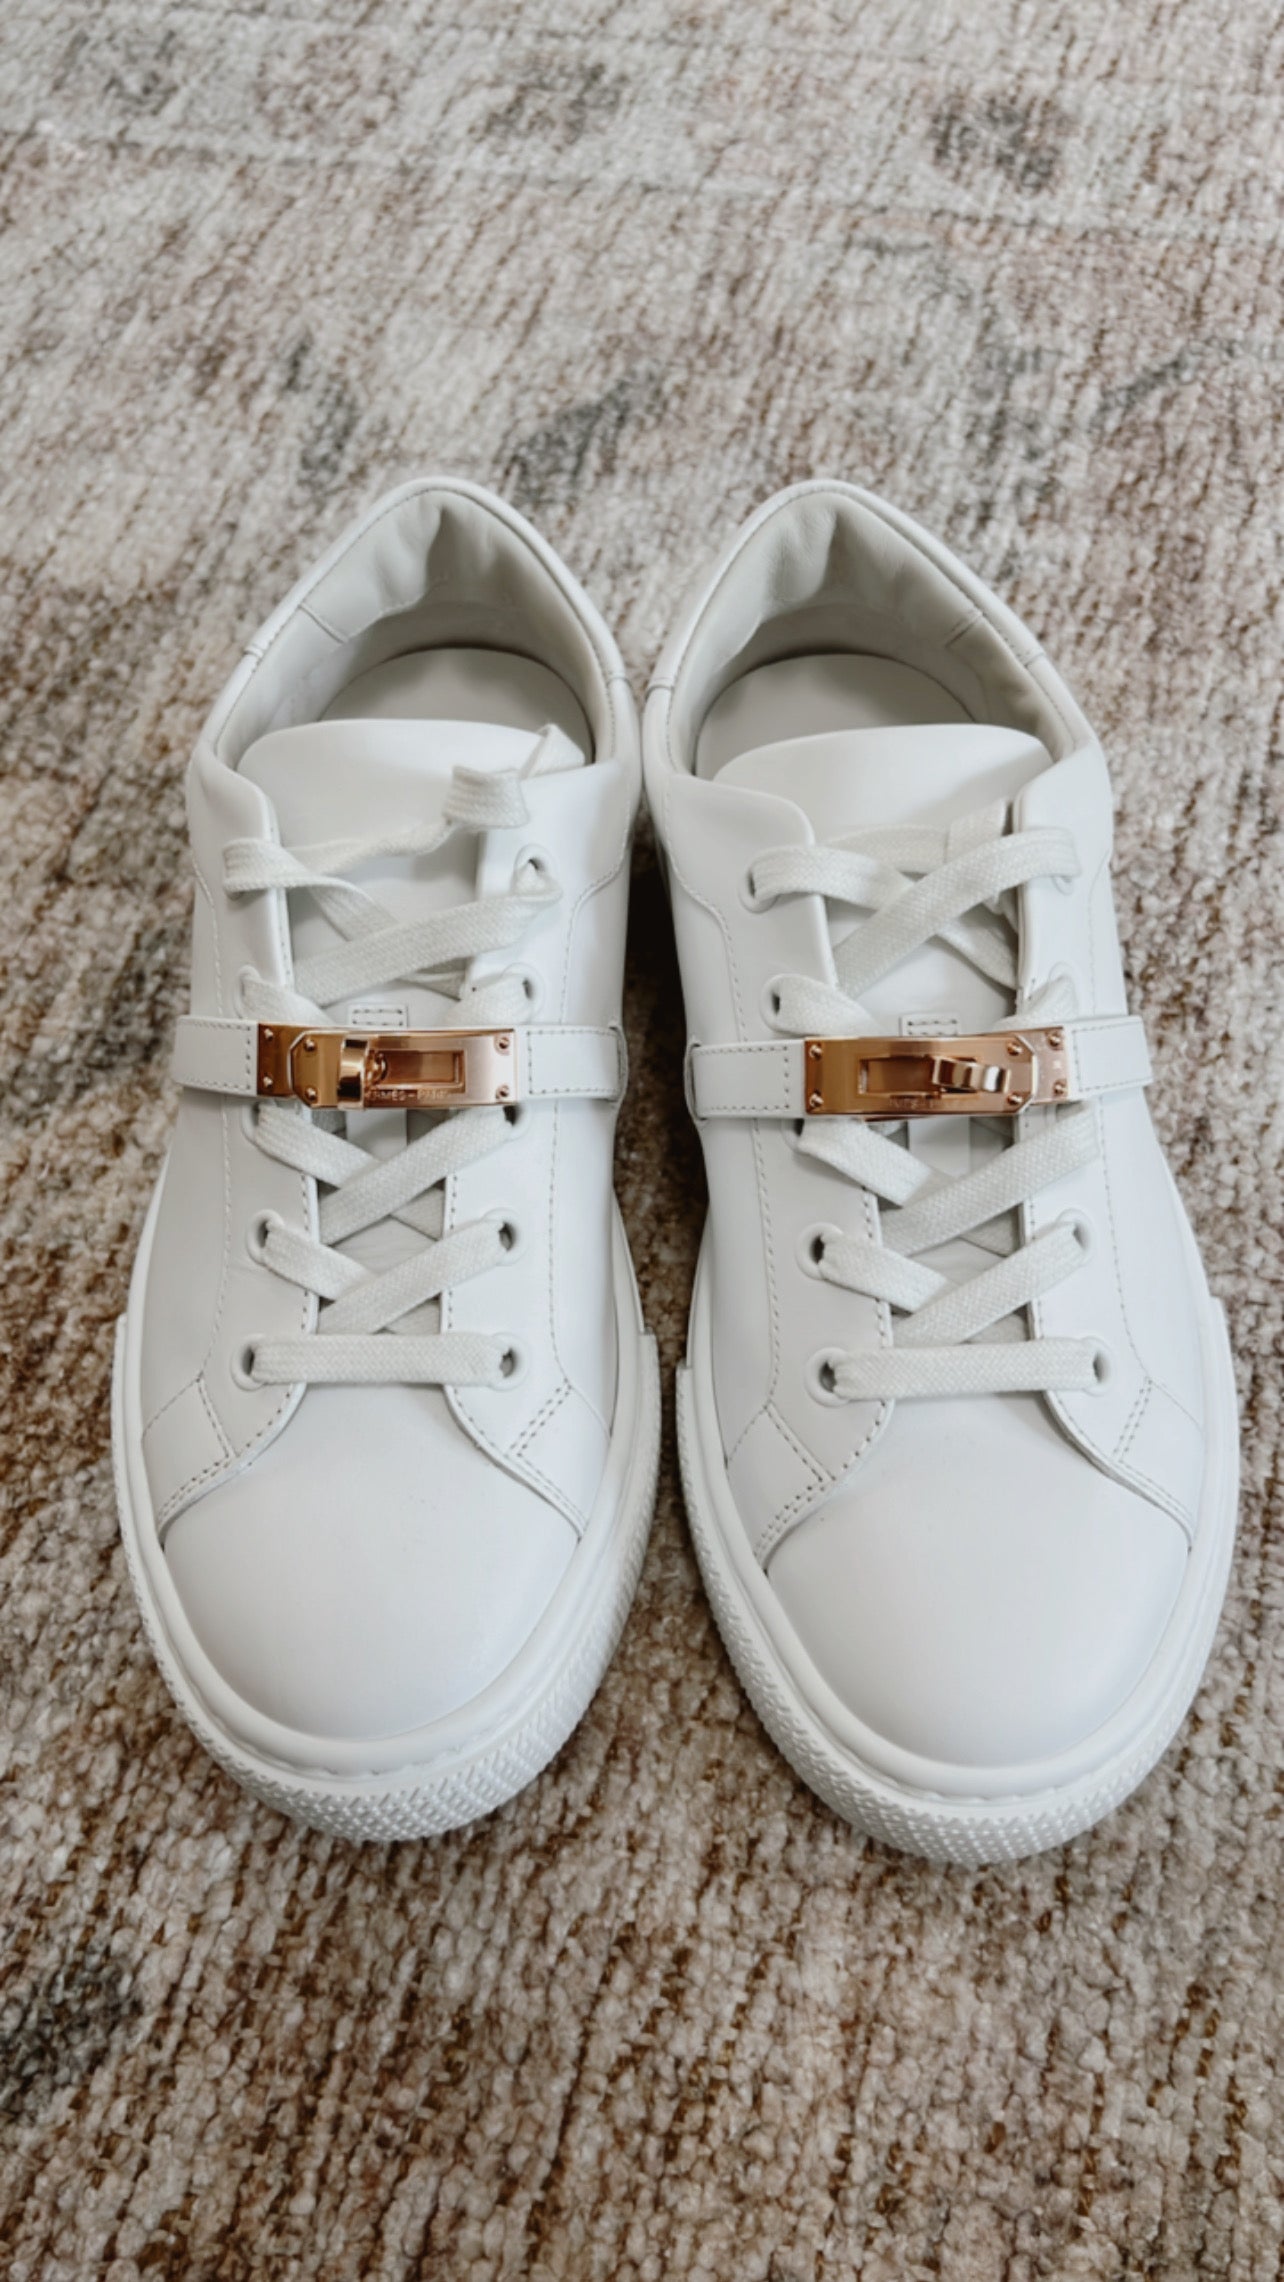 Hermès - Day Sneaker - Women's Shoes